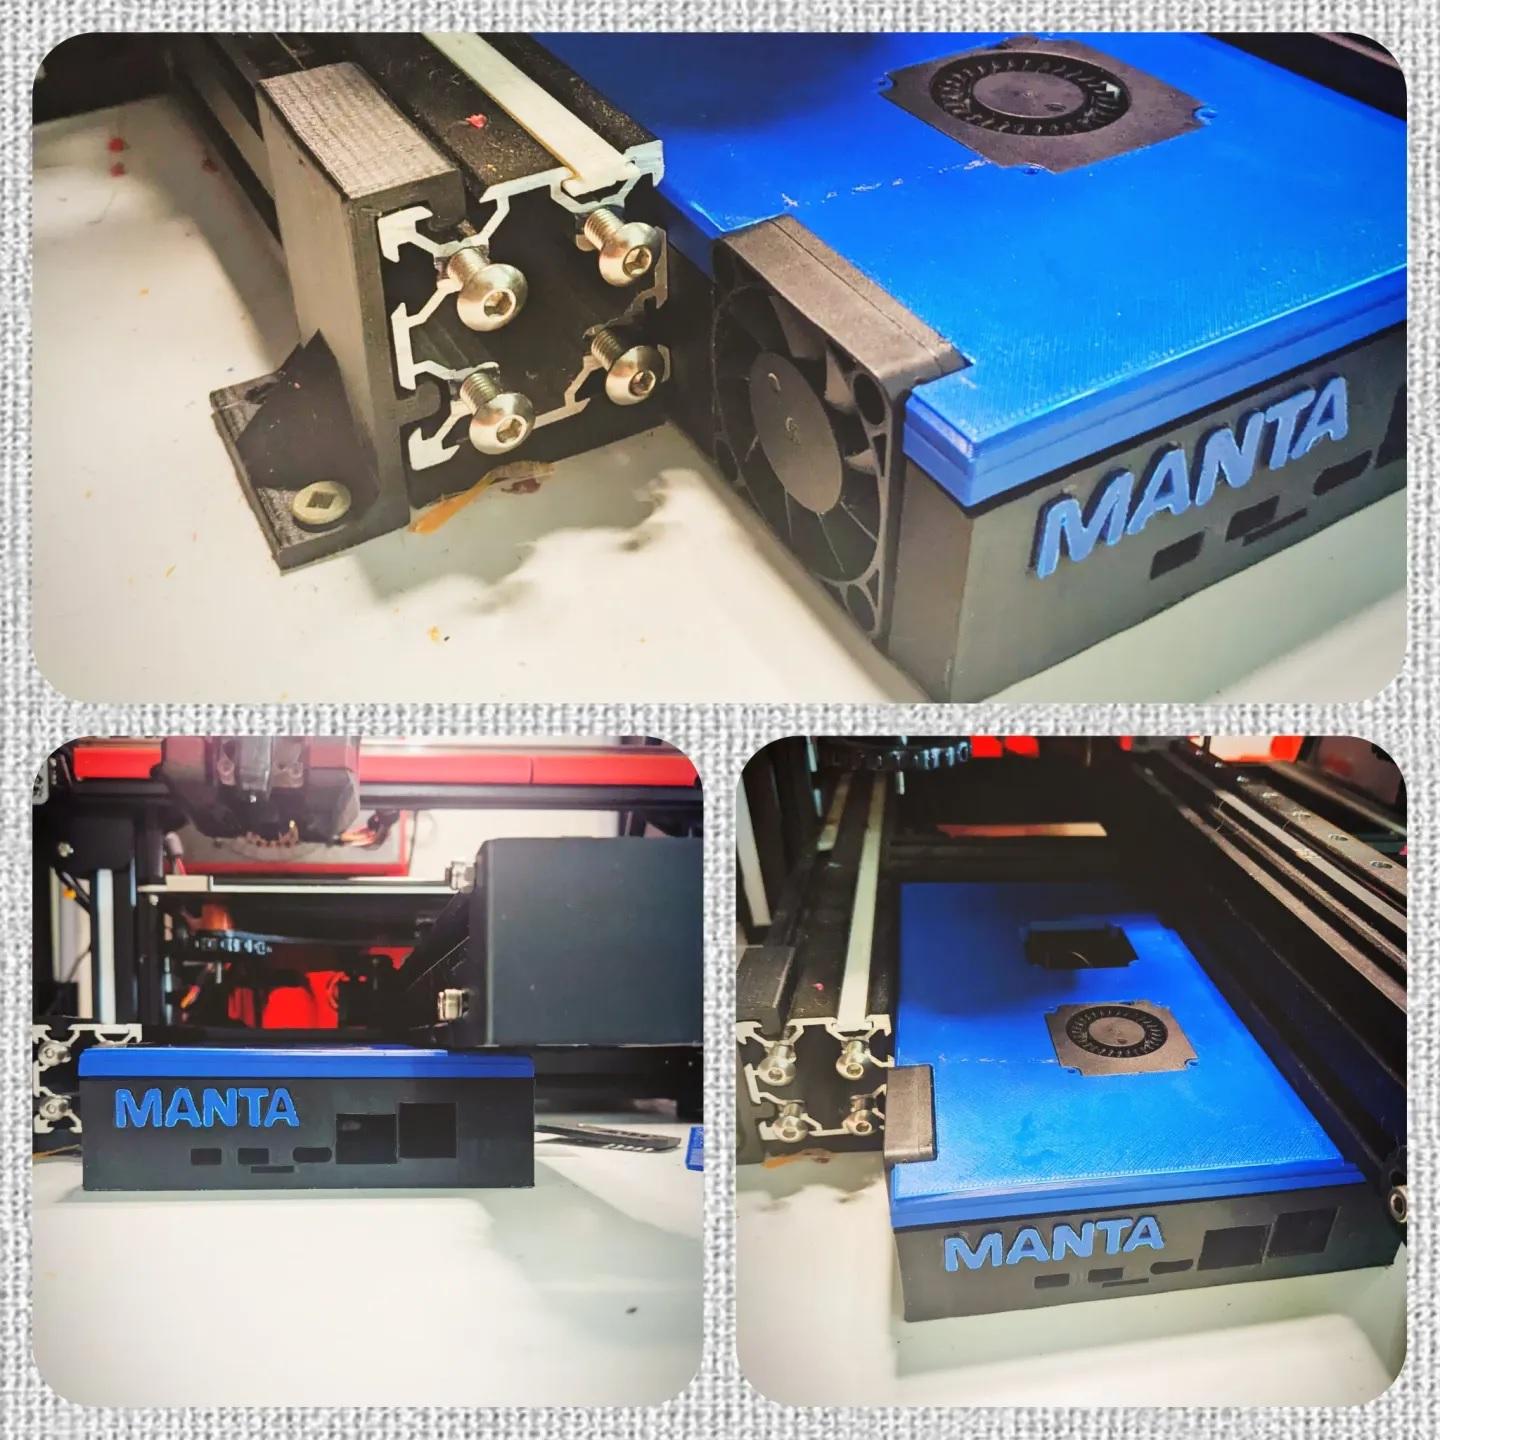 BTT Manta MP8 motherboard case 3d model